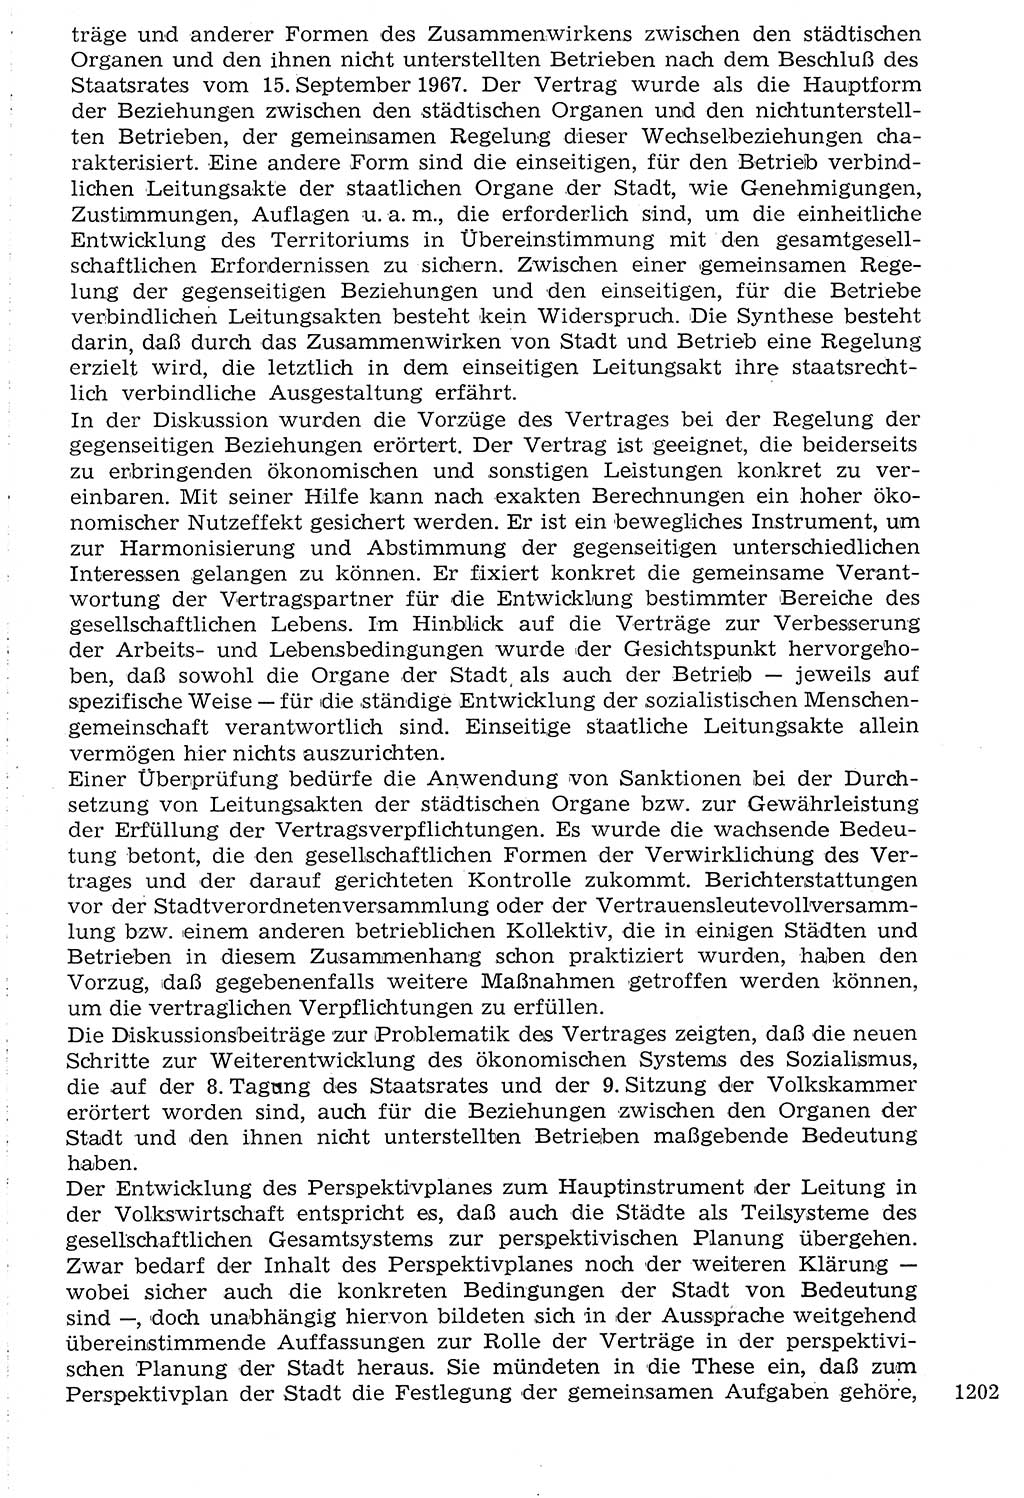 Staat und Recht (StuR), 17. Jahrgang [Deutsche Demokratische Republik (DDR)] 1968, Seite 1202 (StuR DDR 1968, S. 1202)